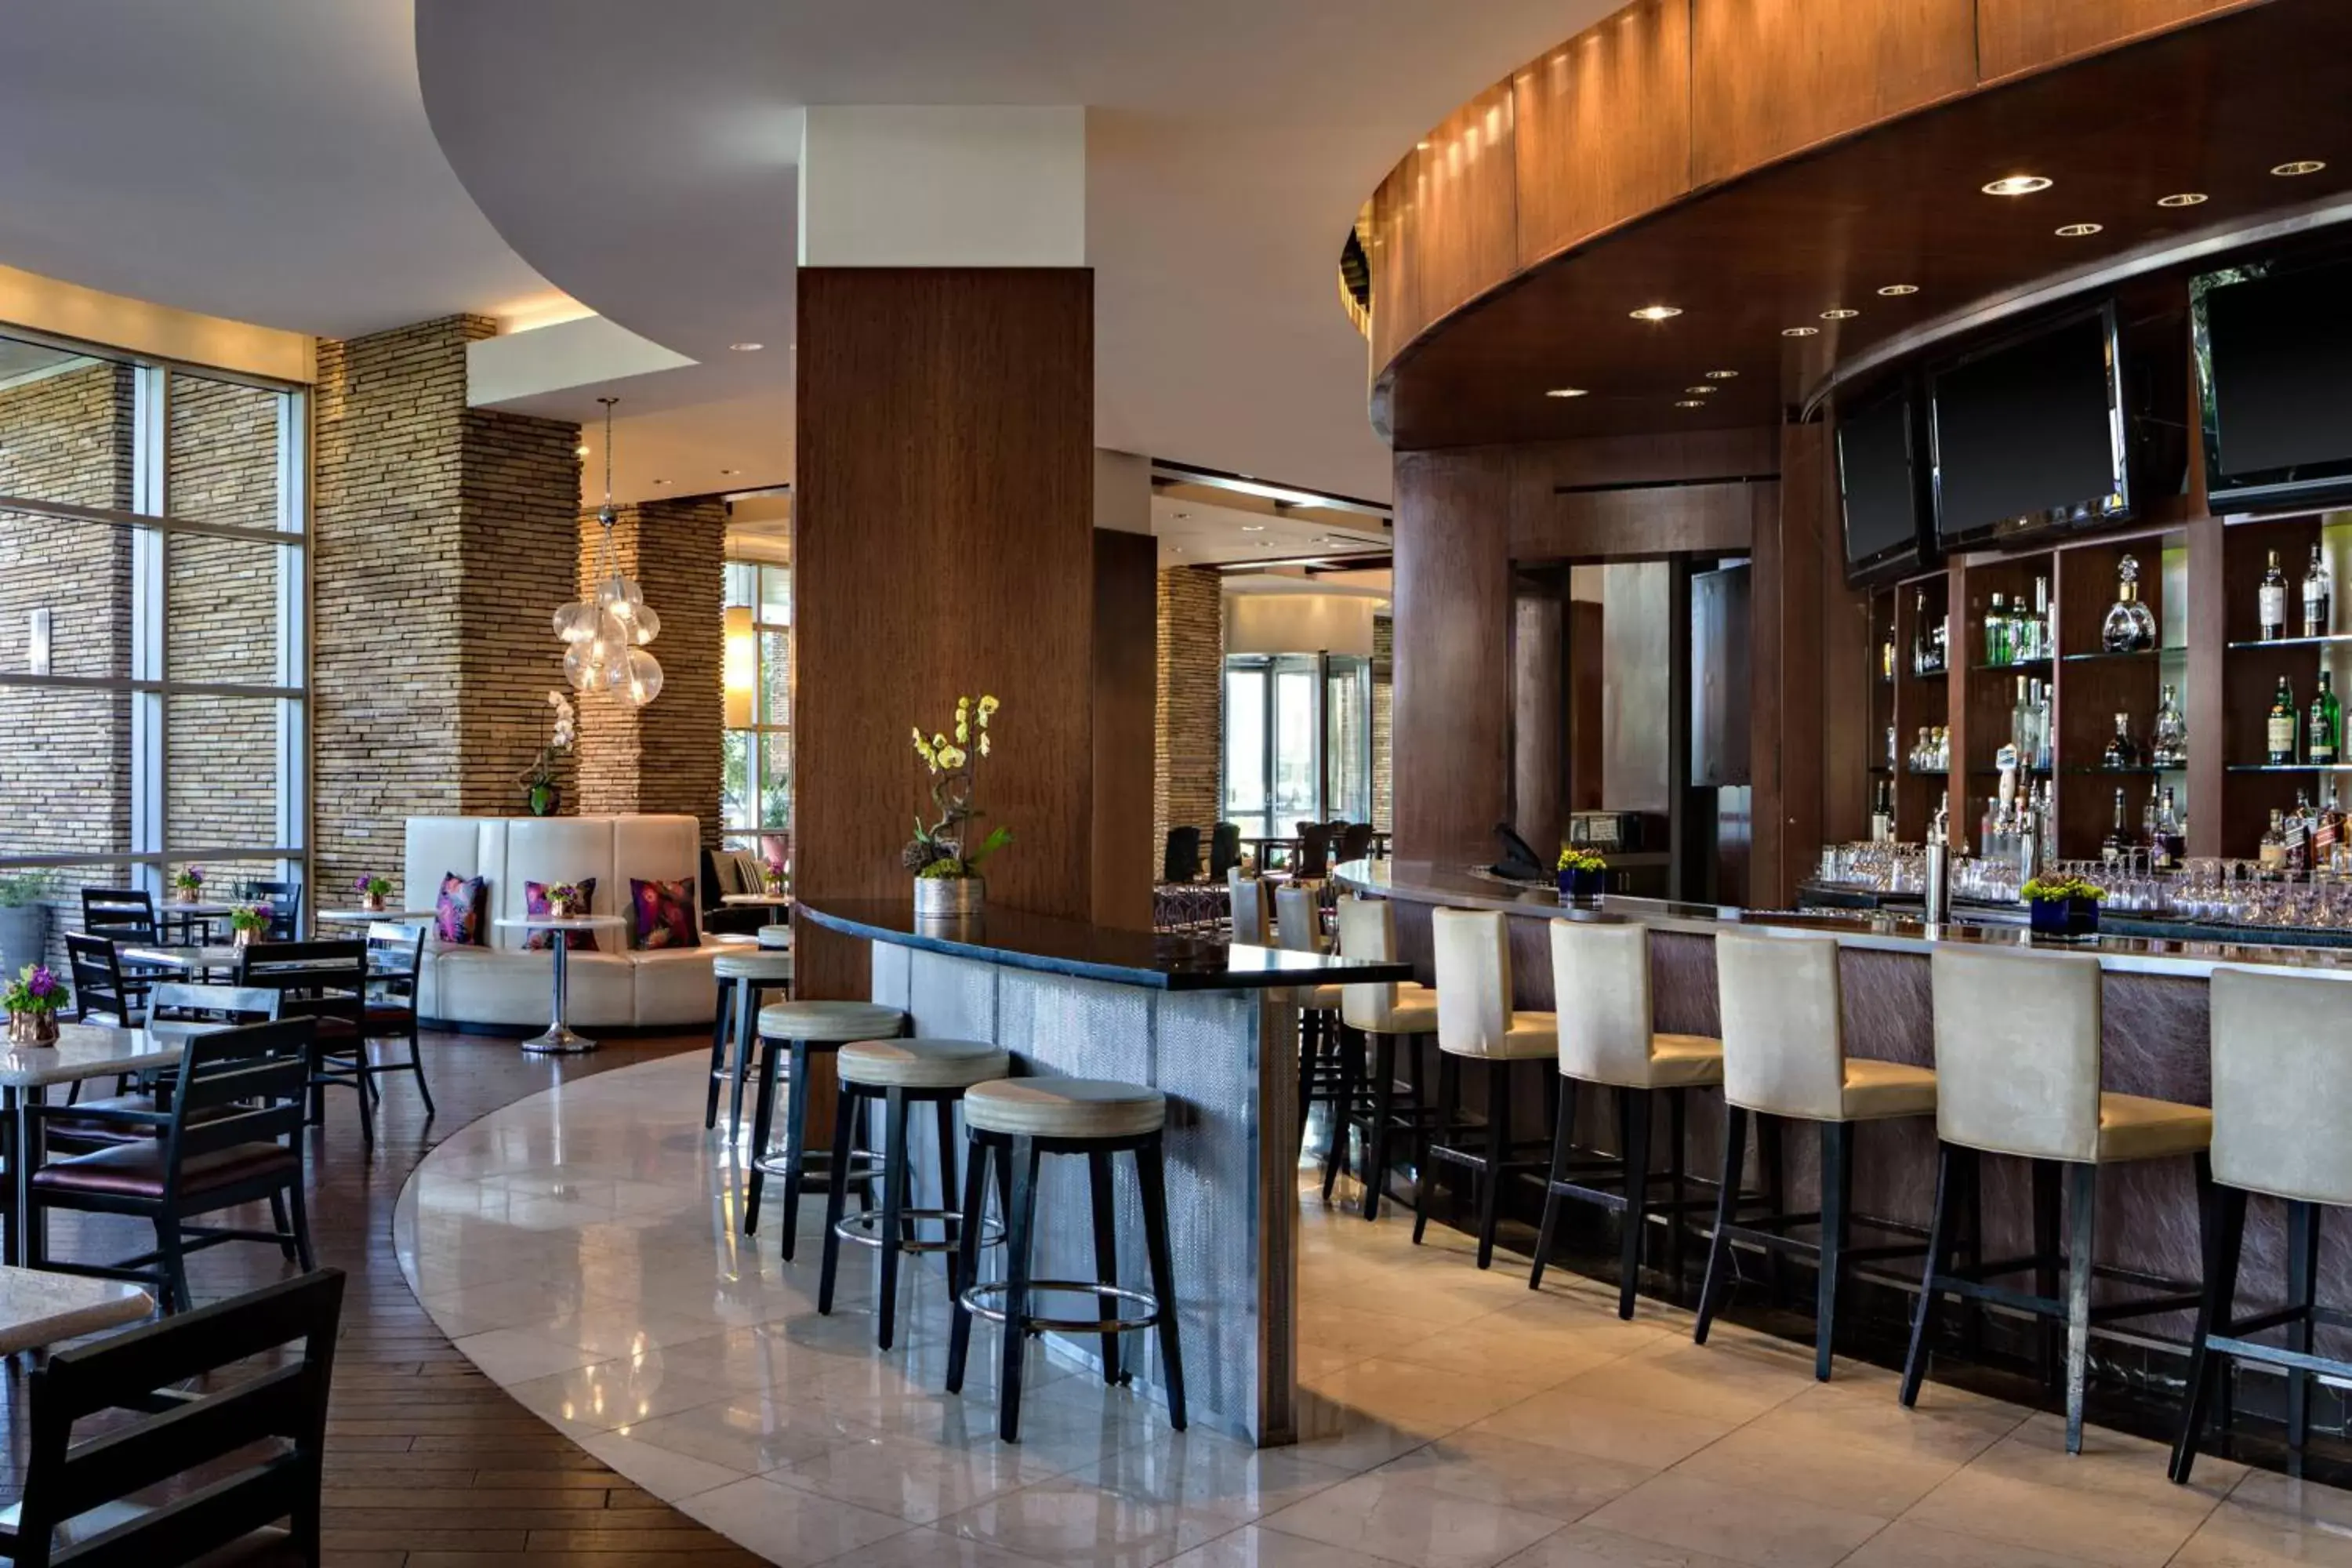 Restaurant/places to eat, Lounge/Bar in Renaissance Las Vegas Hotel